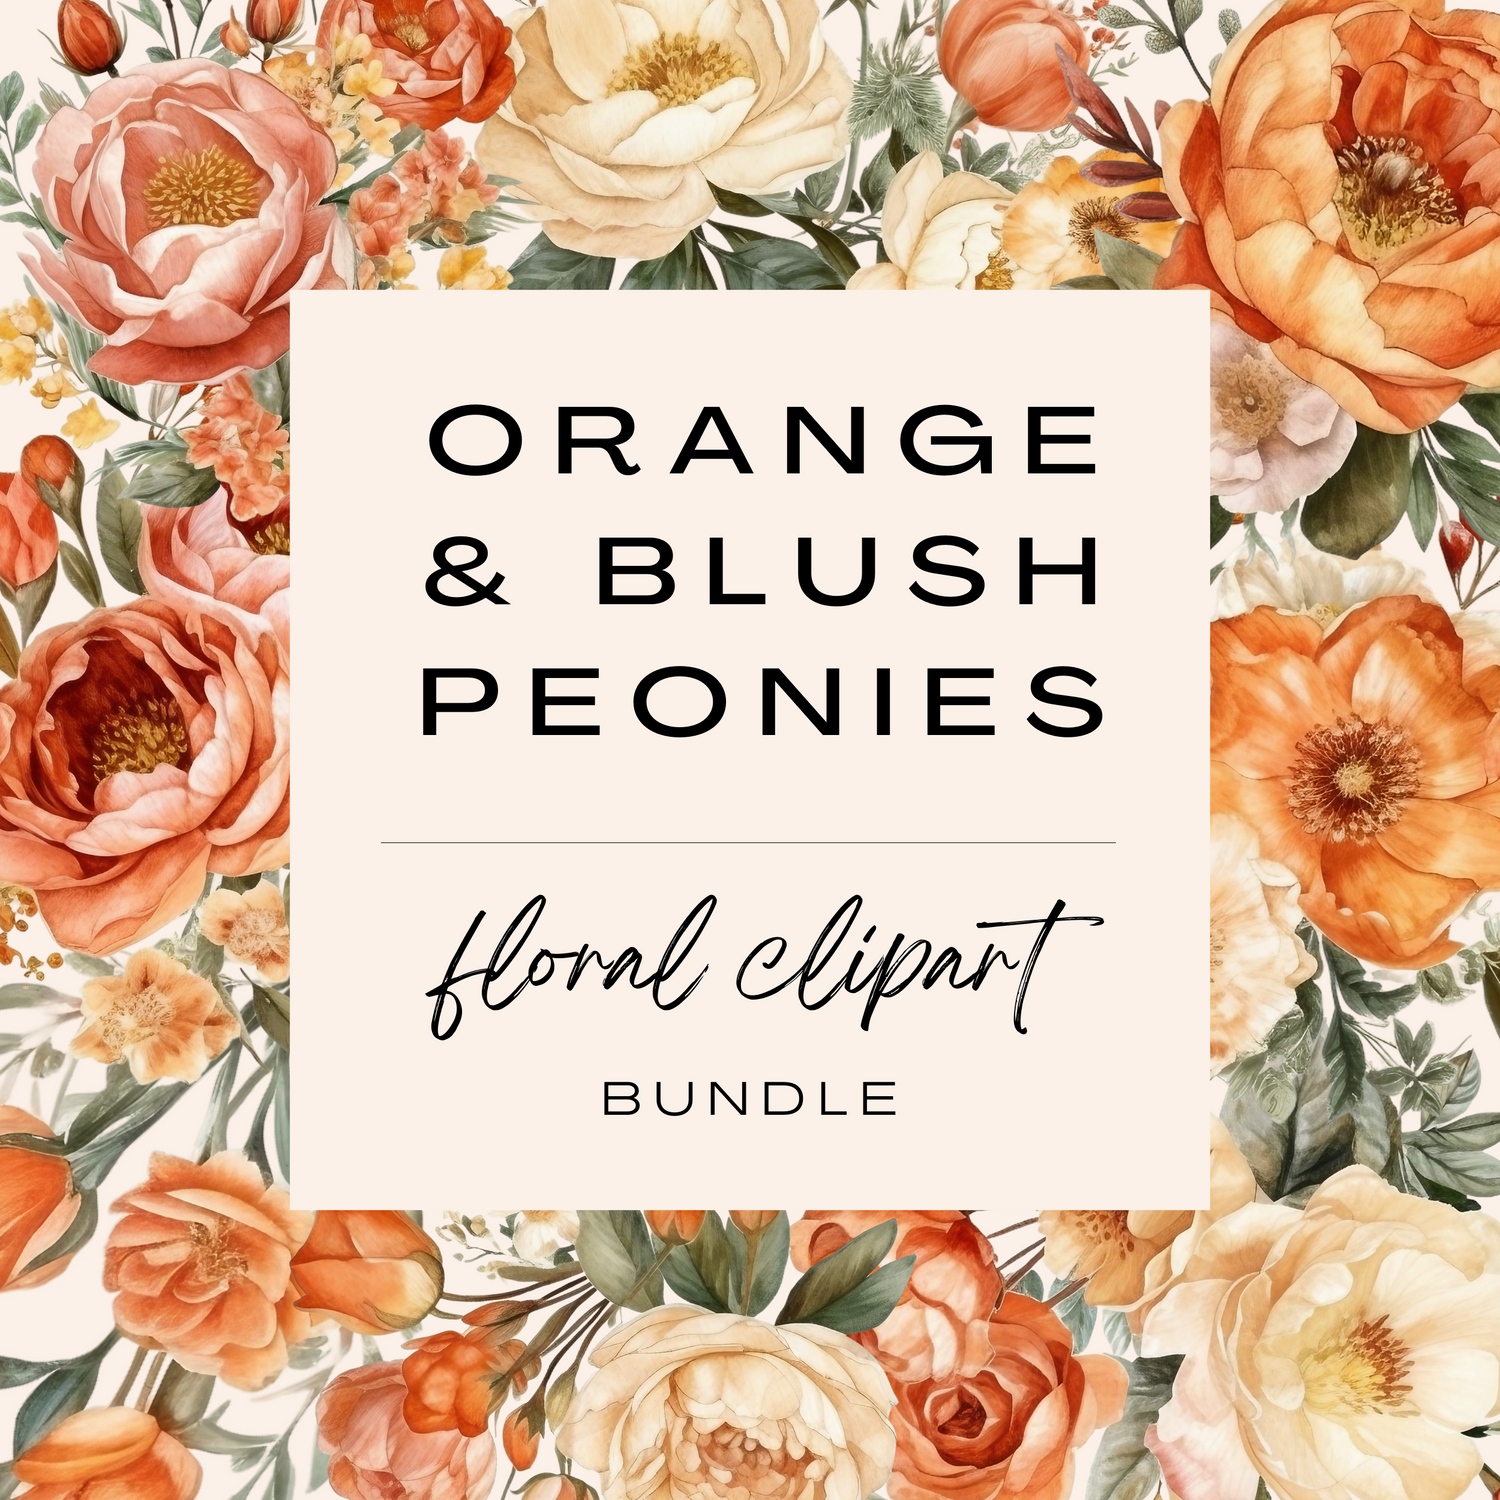 Orange &amp; Blush Peony Clipart Bundle (Commercial Use)